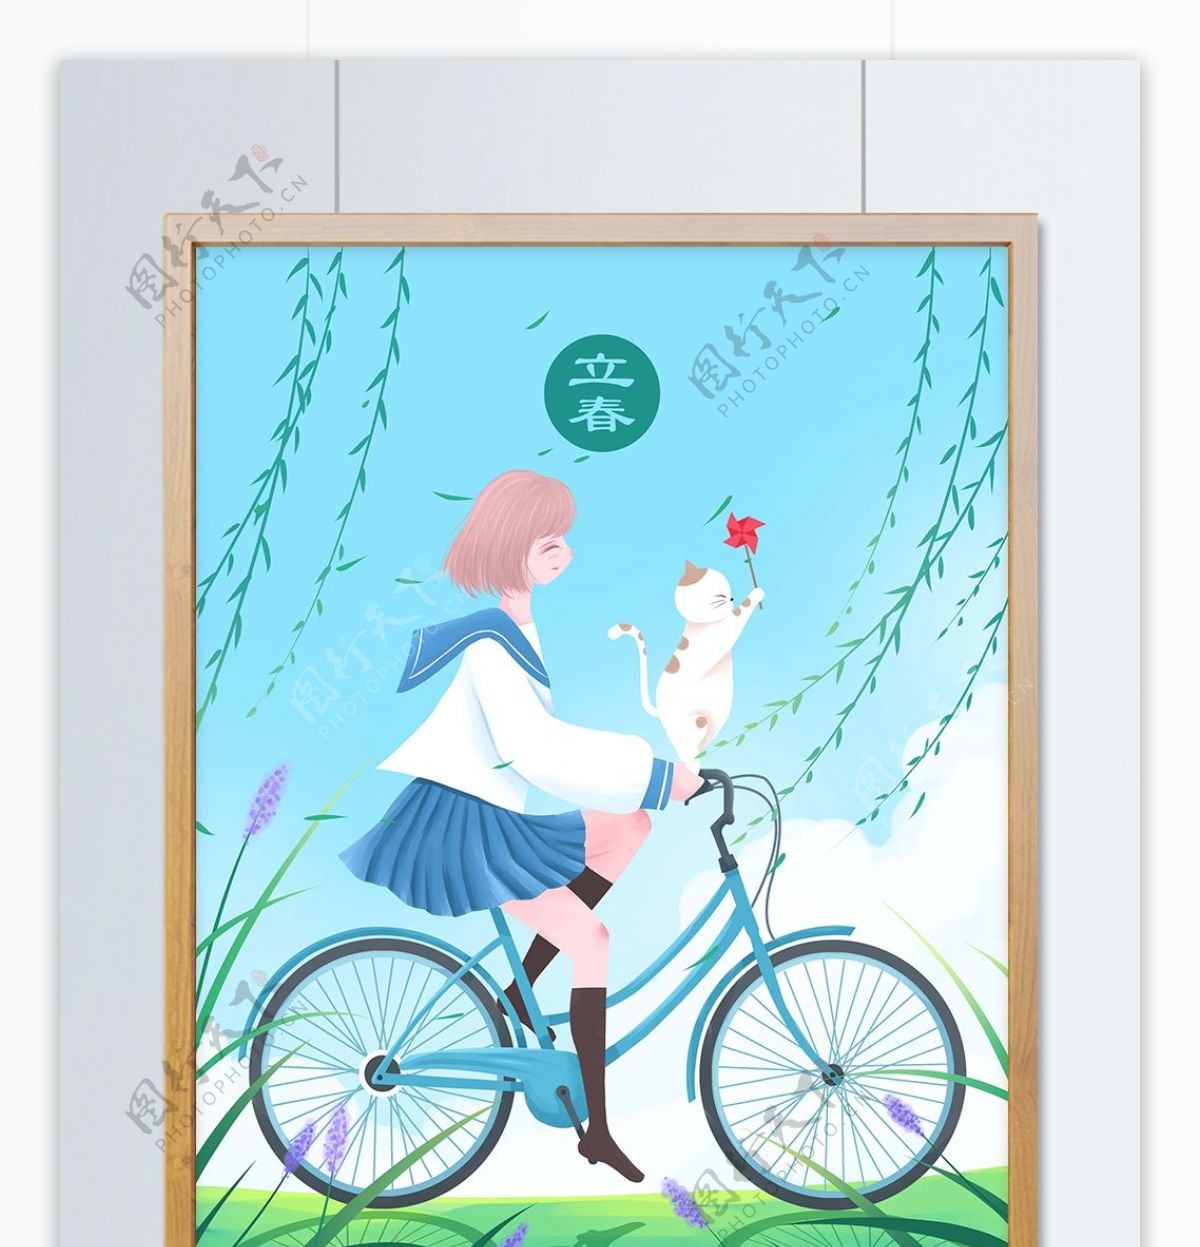 立春清新插画春天骑自行车的女孩